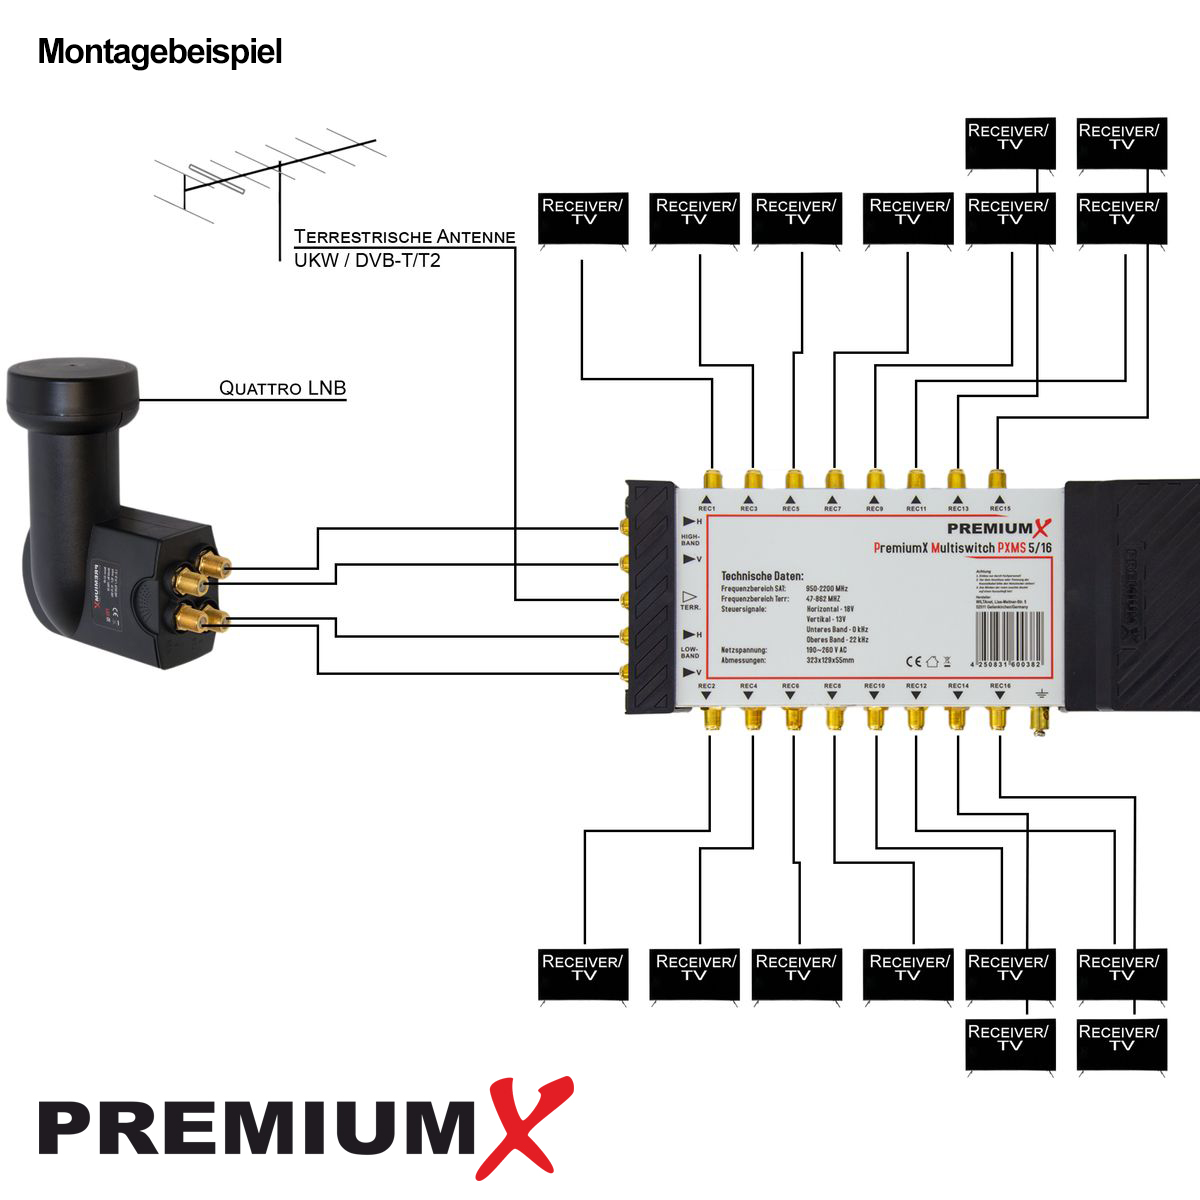 PREMIUMX Multischalter Set 5/16 Verteiler F-Montageschlüssel Sat-Multischalter SAT Multiswitch